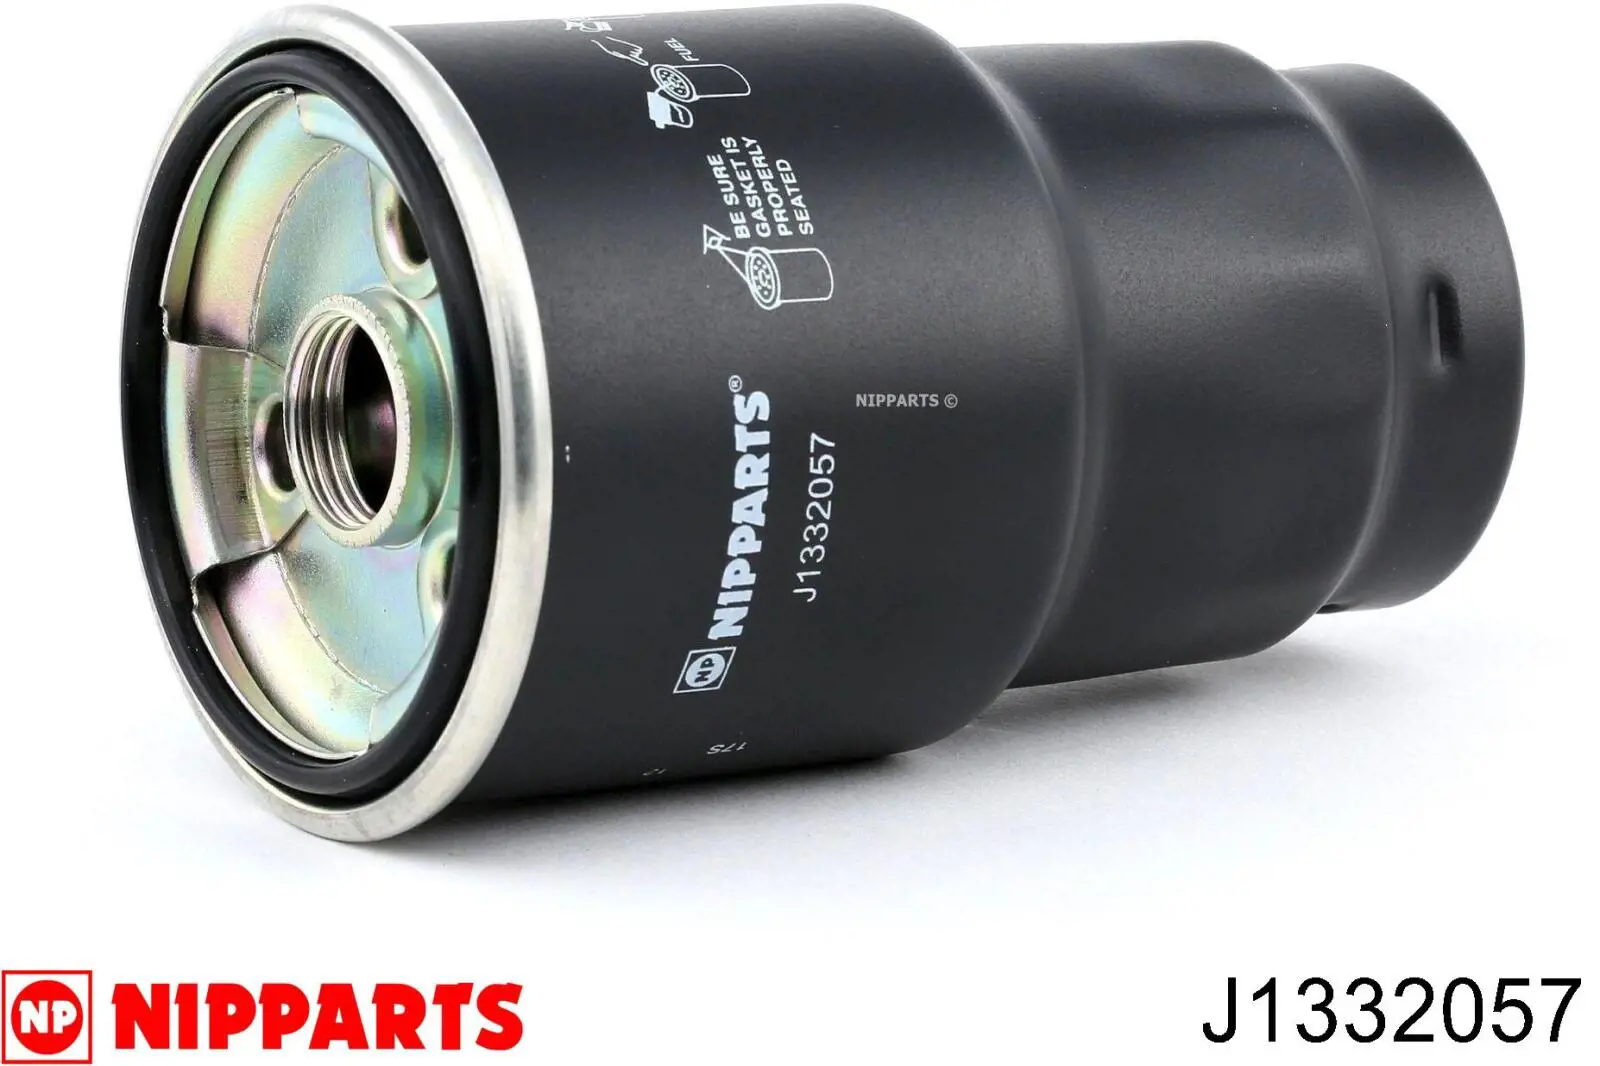 J1332057 Nipparts filtro combustible